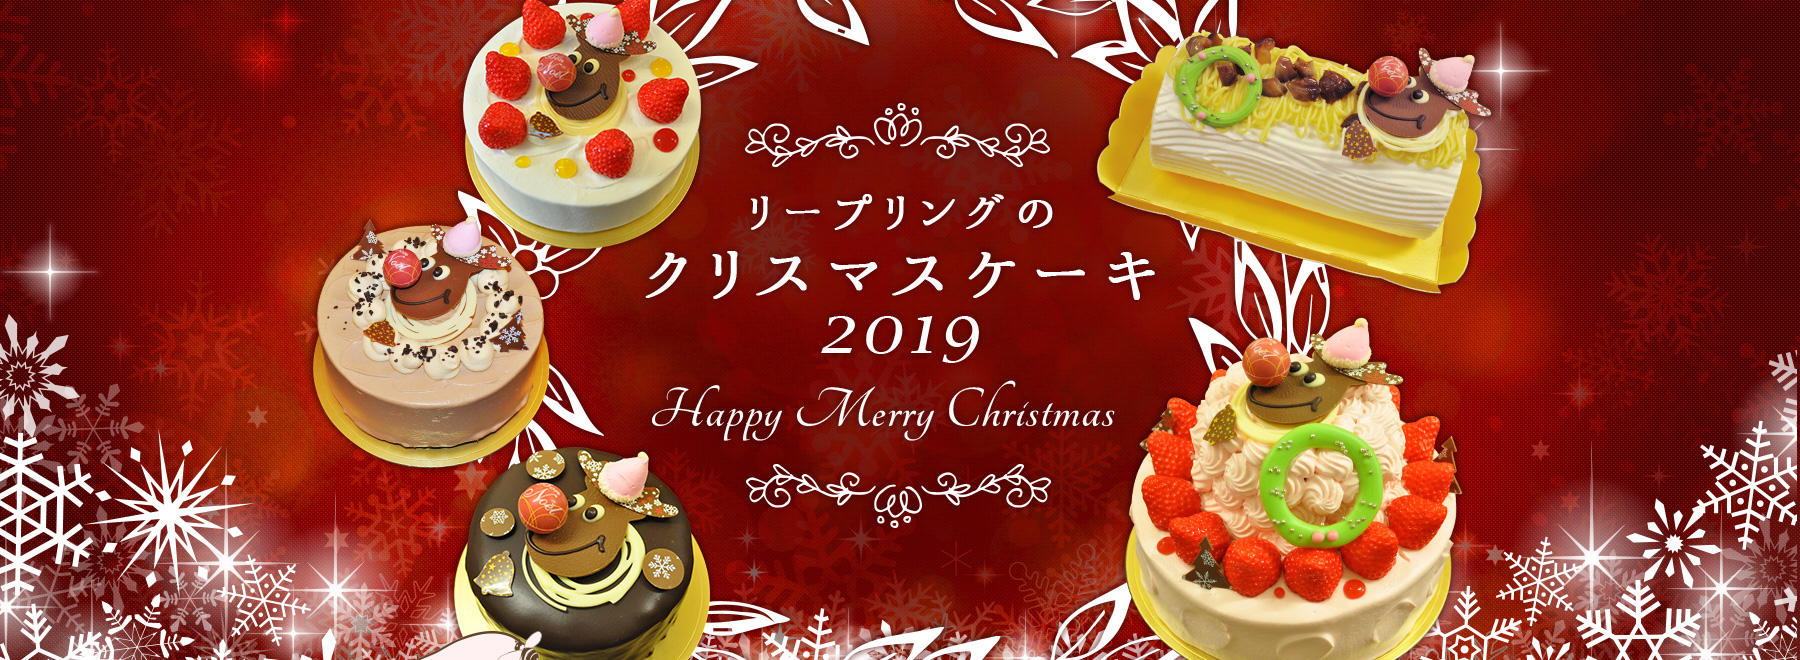 クリスマスケーキ予約はお早めに 浜松市内のおすすめケーキ屋６店 浜松エリアの生活 エンタメ情報はエネフィブログ